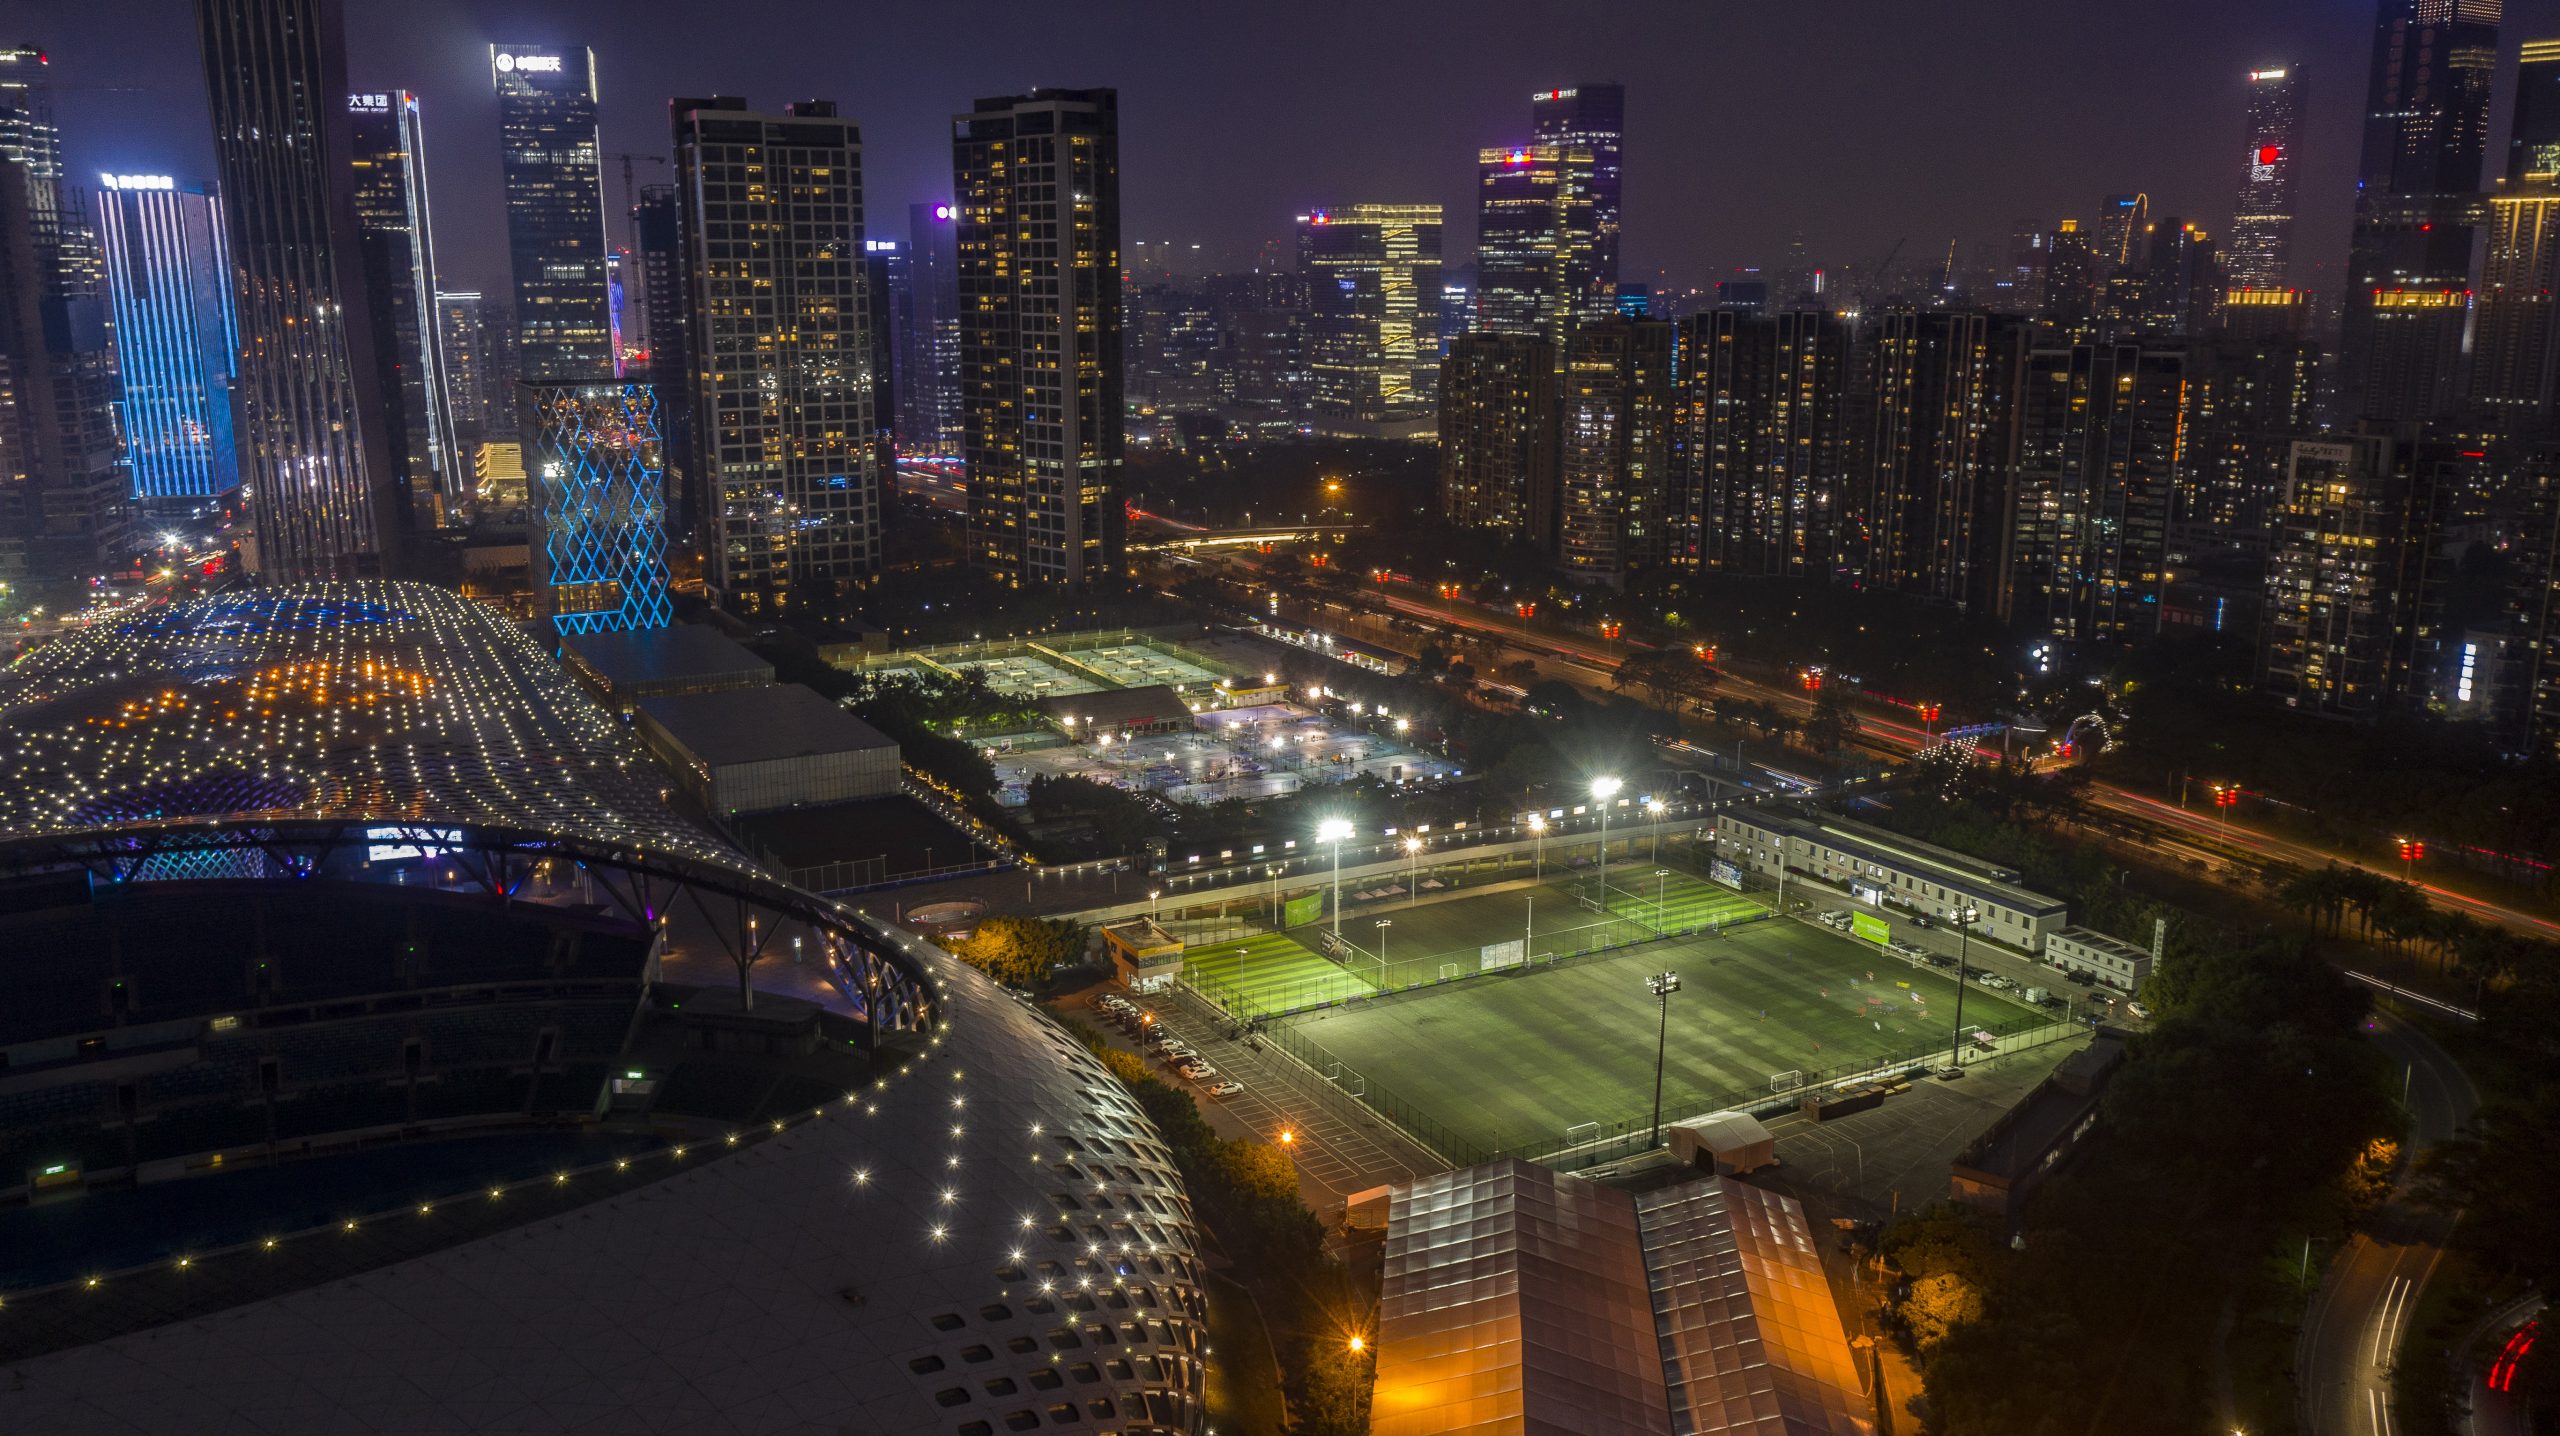 Drone photography Shenzhen China, stadium in the evening. Photographer Tuomas Harjumaaskola.